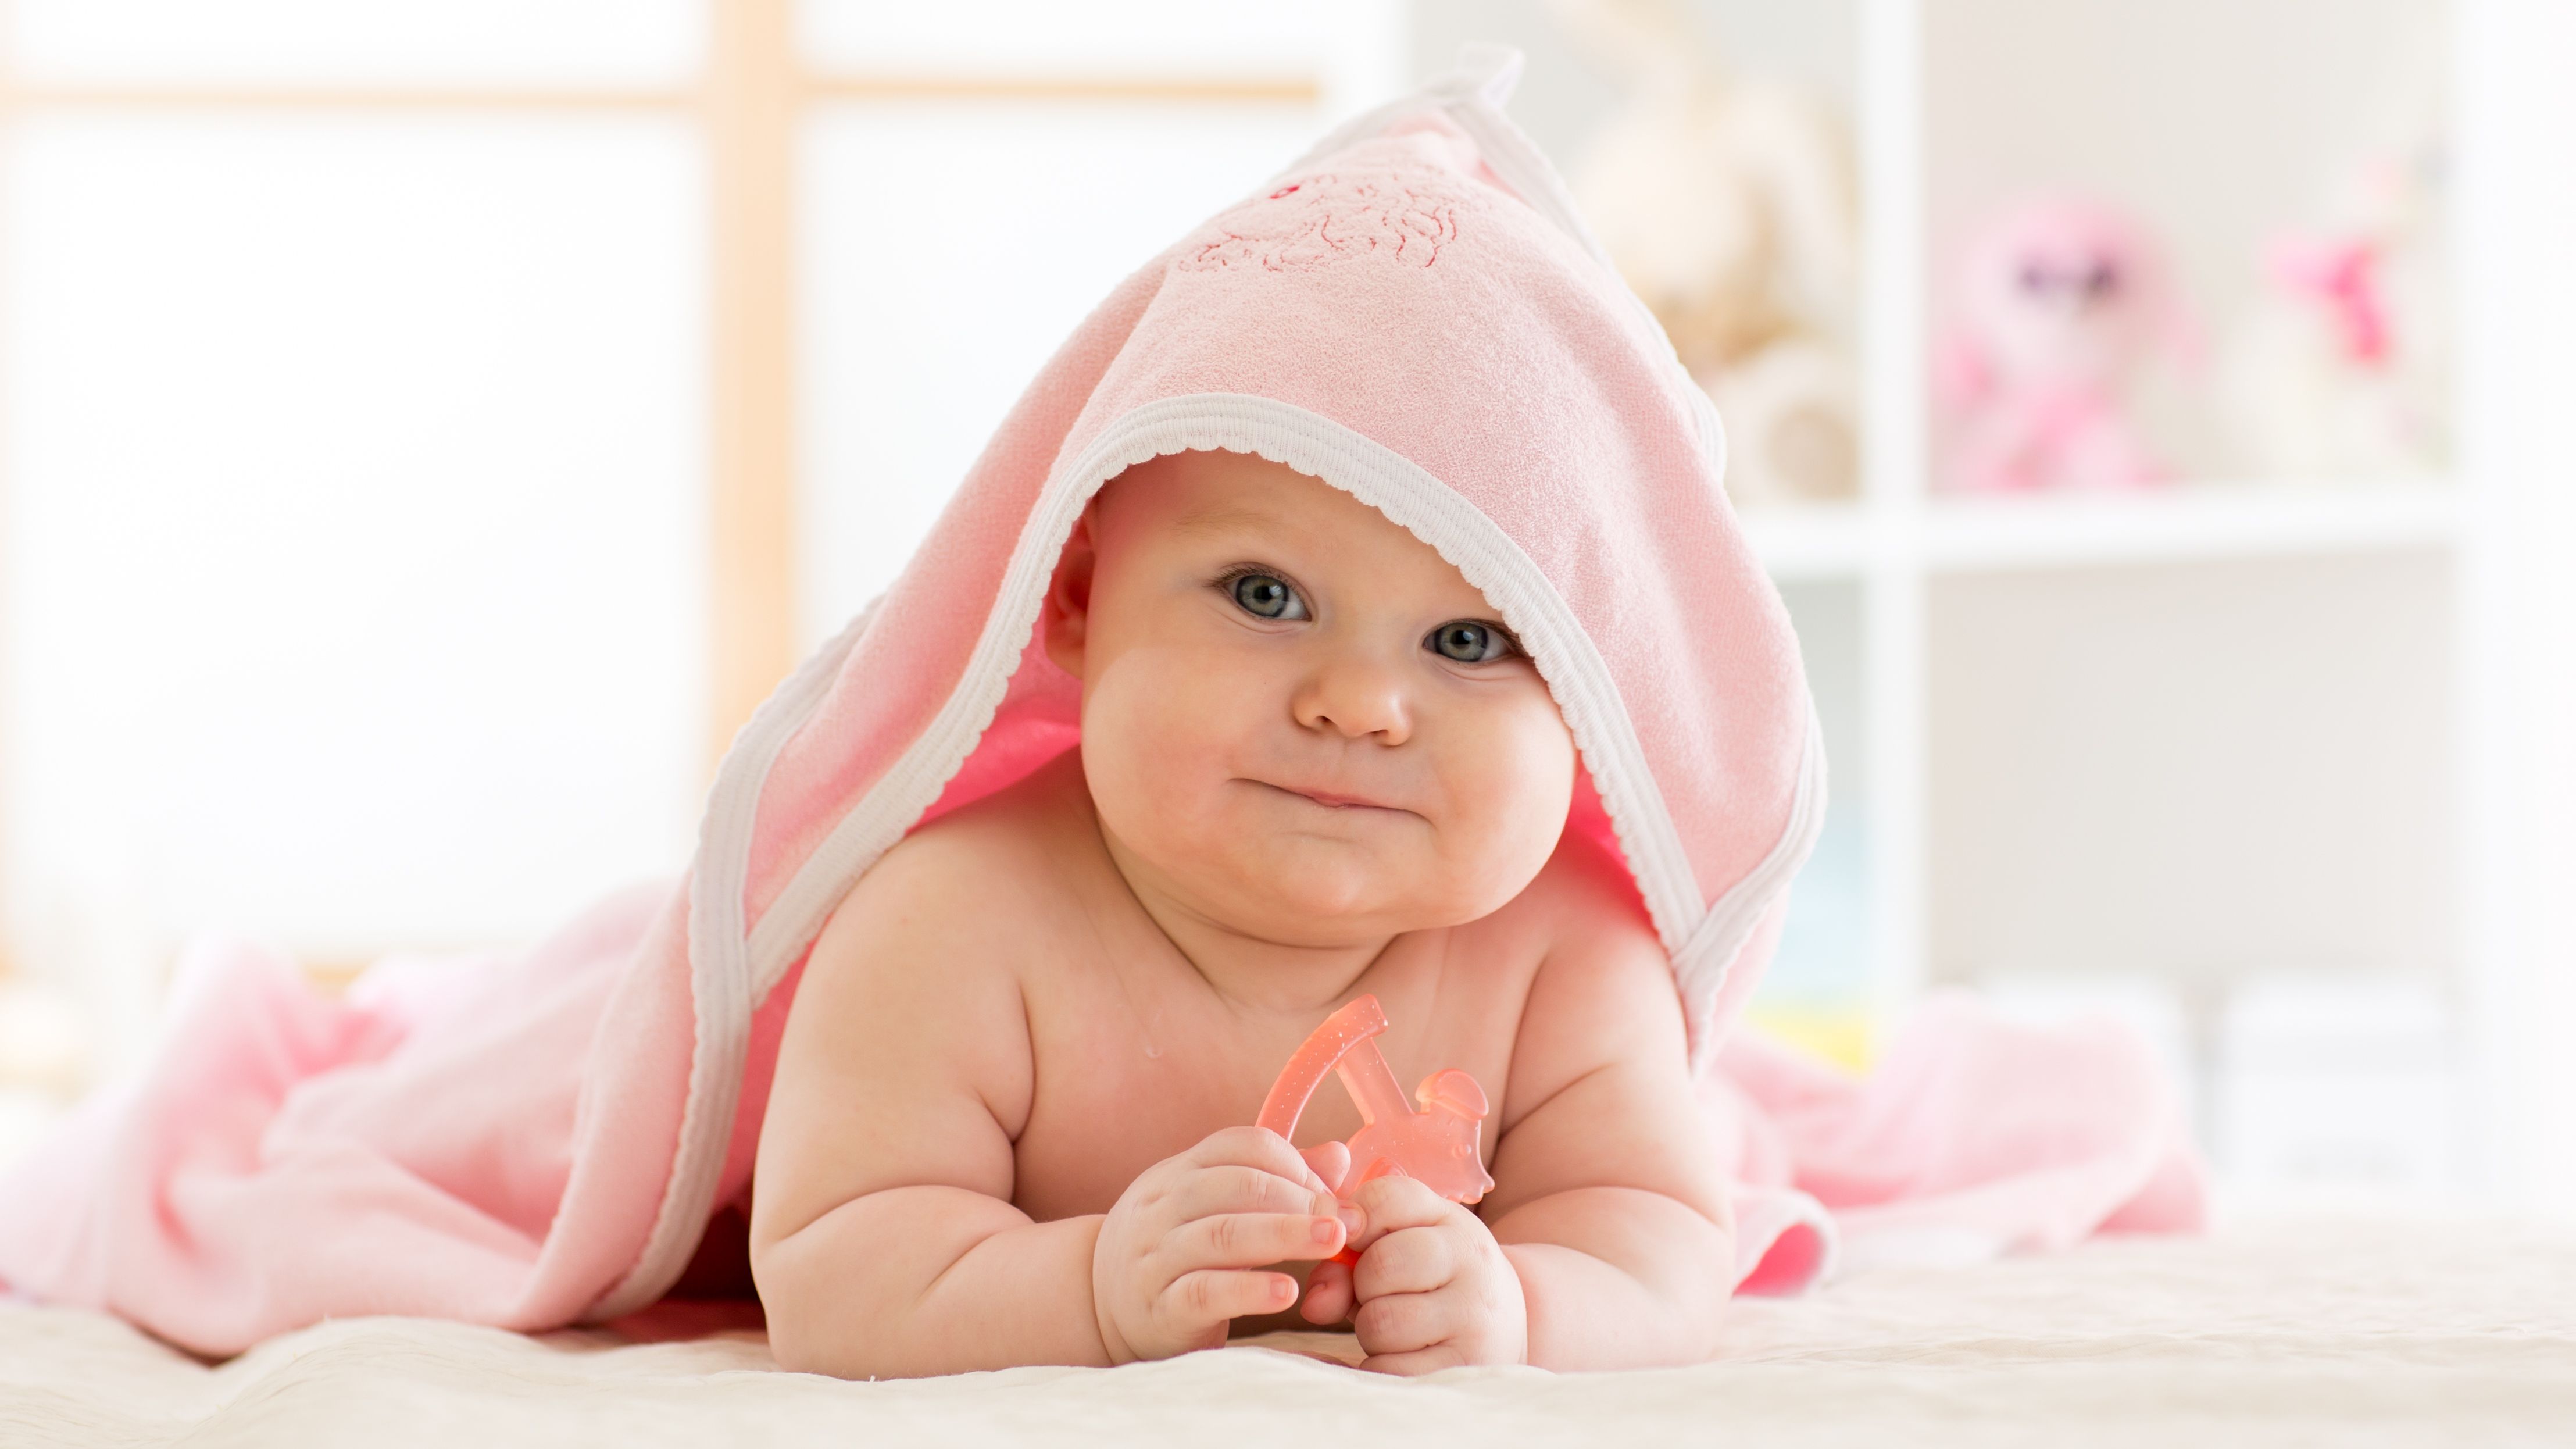 Trousse de soin pour bébé : les meilleures trousses pour bébé